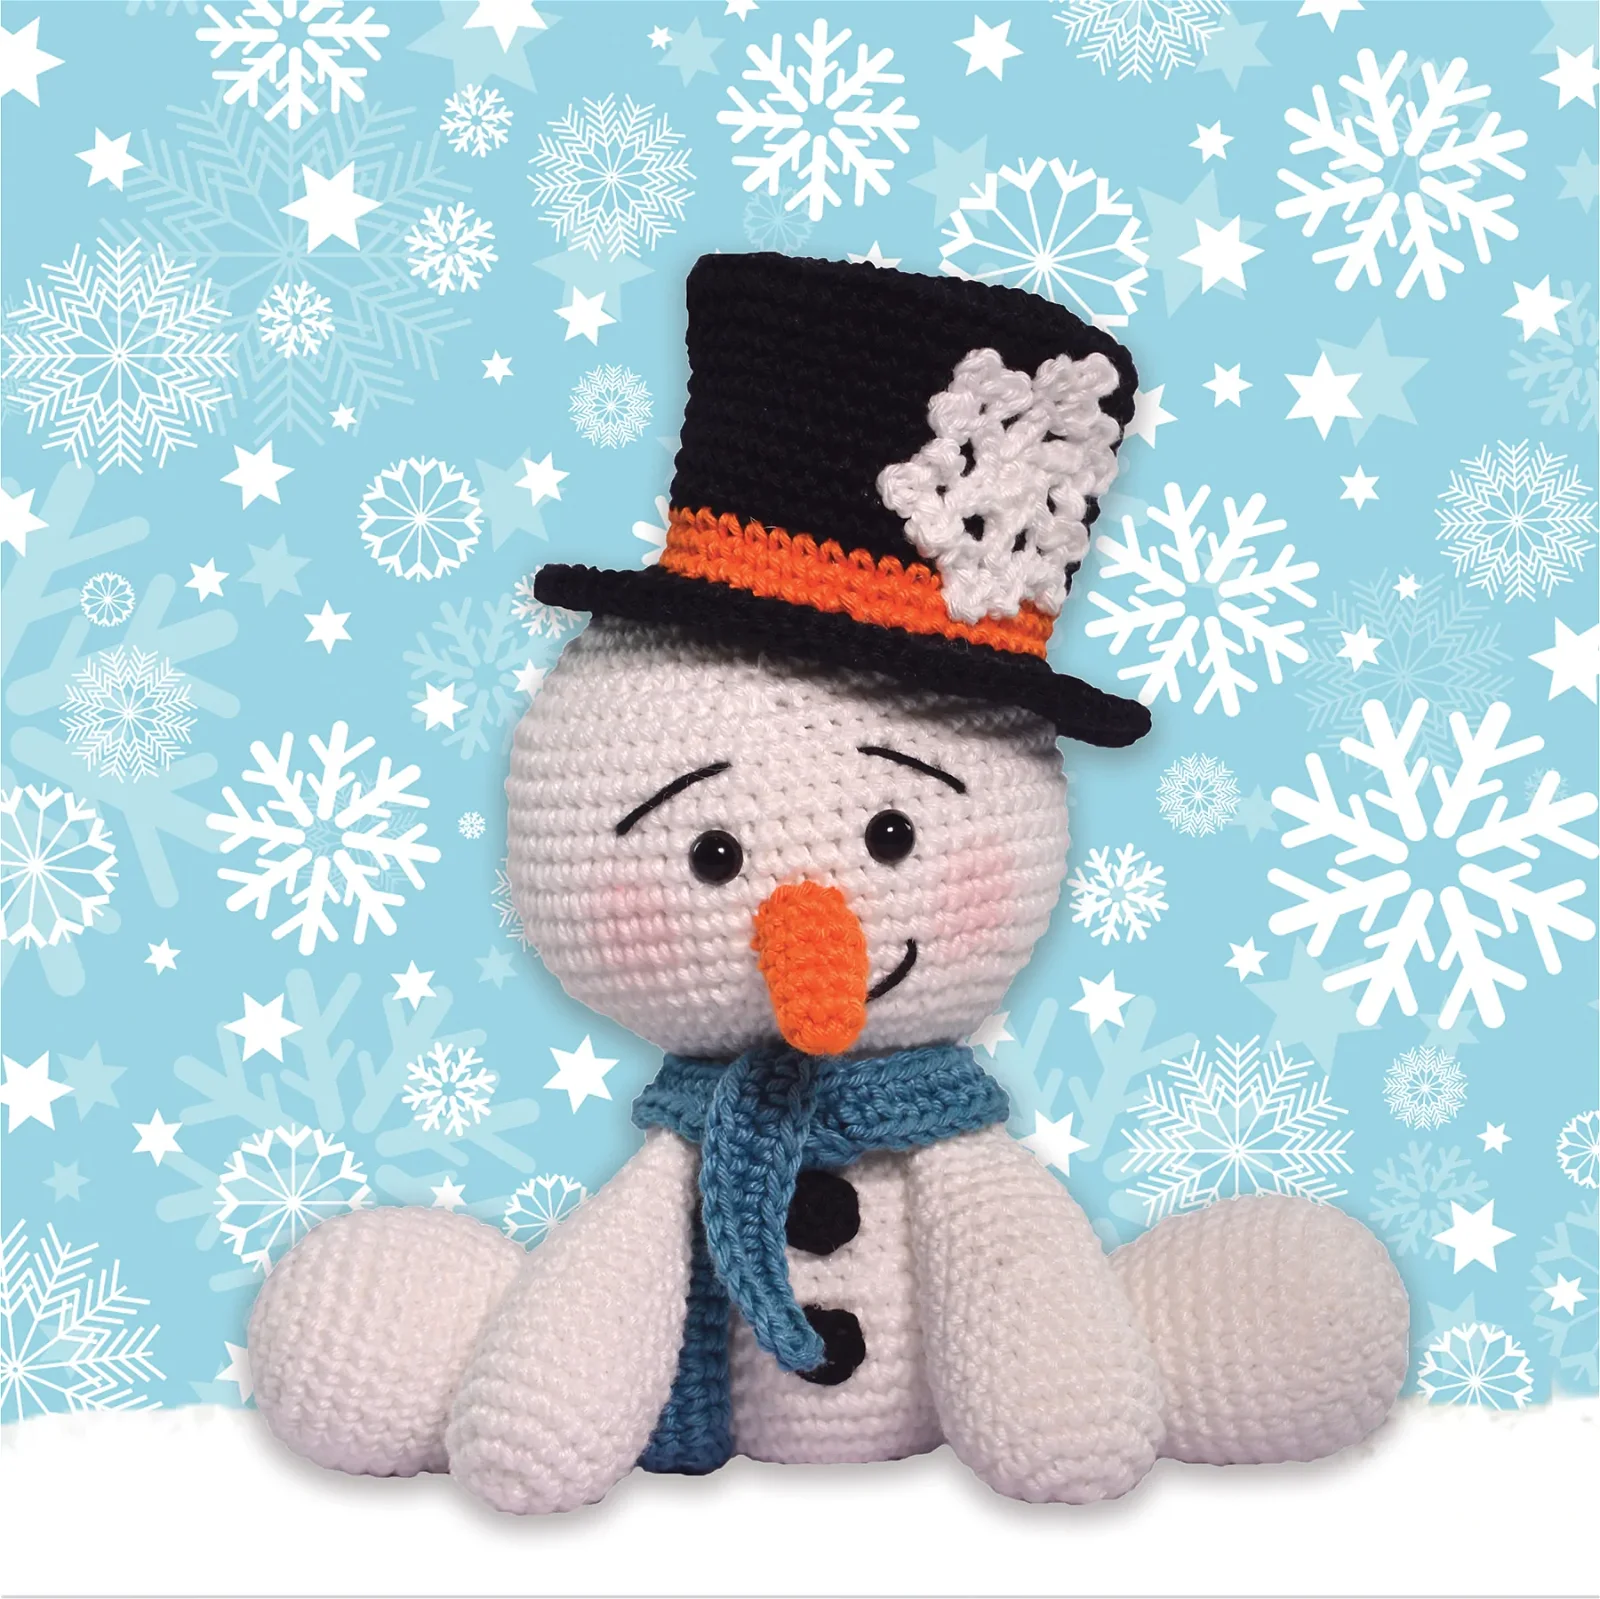 Snowman Holiday Amigurumi Kit